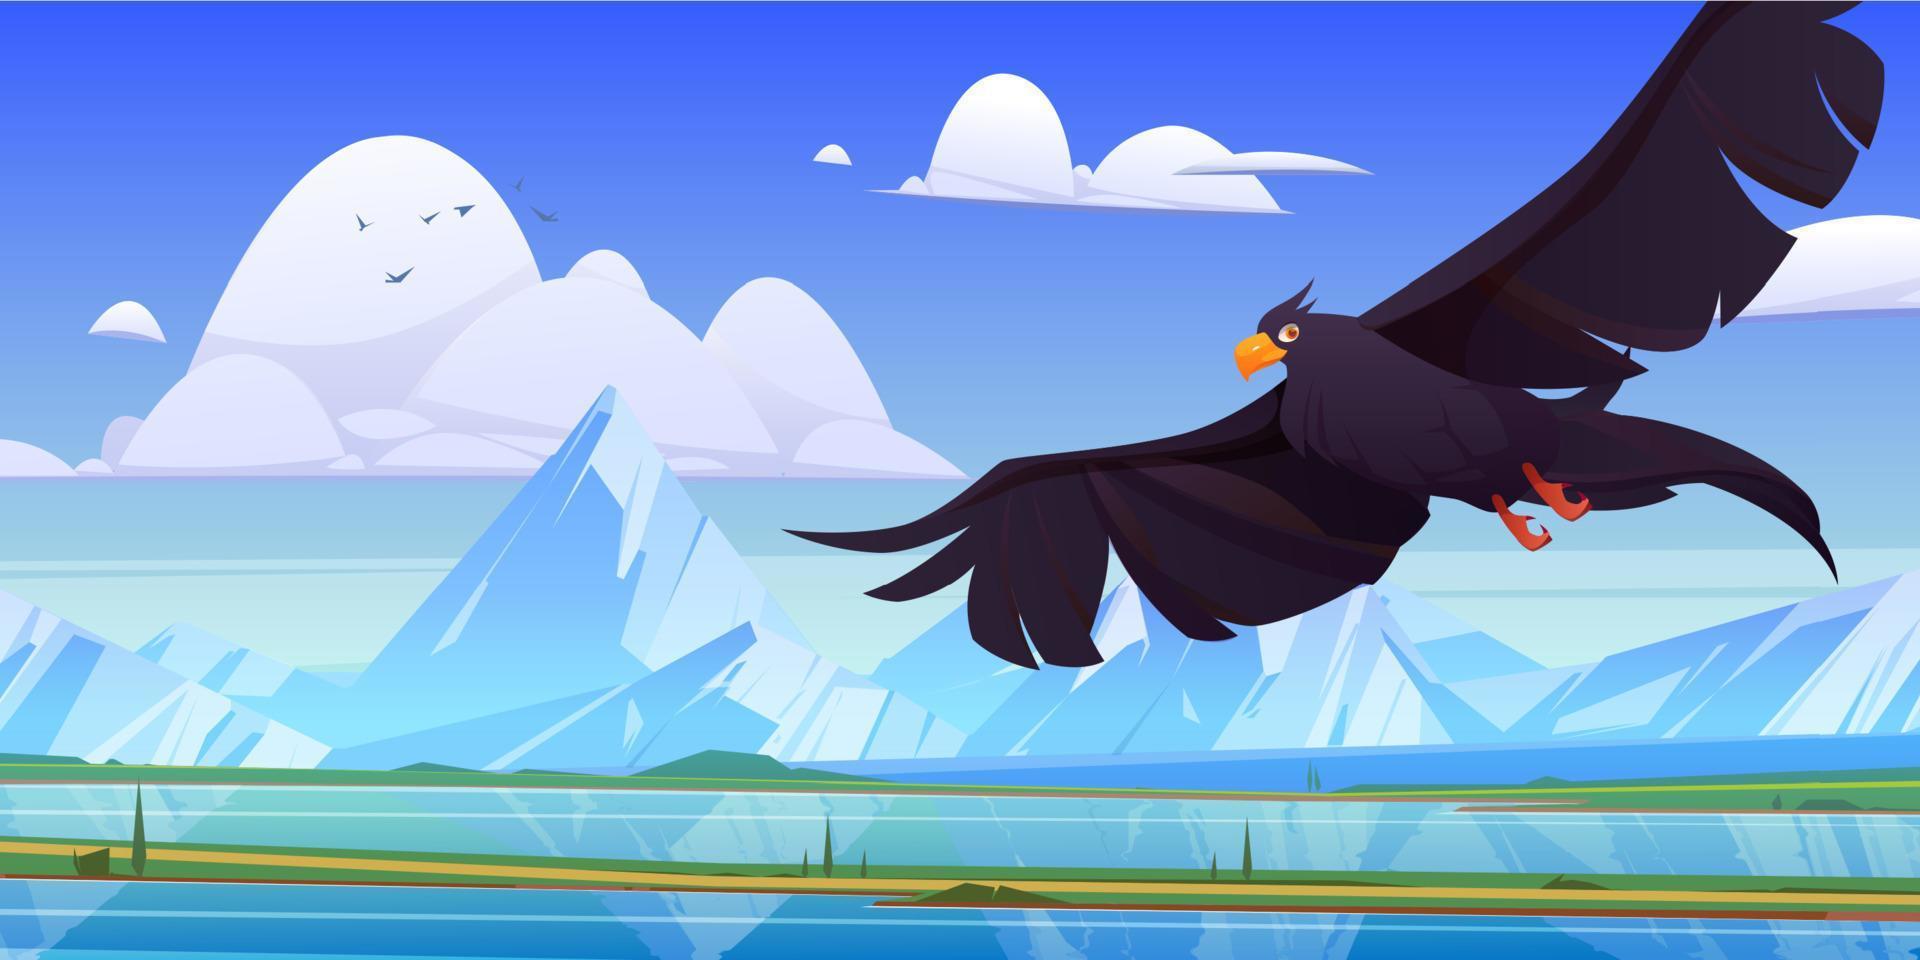 águia negra, falcão ou gavião com asas abertas vetor